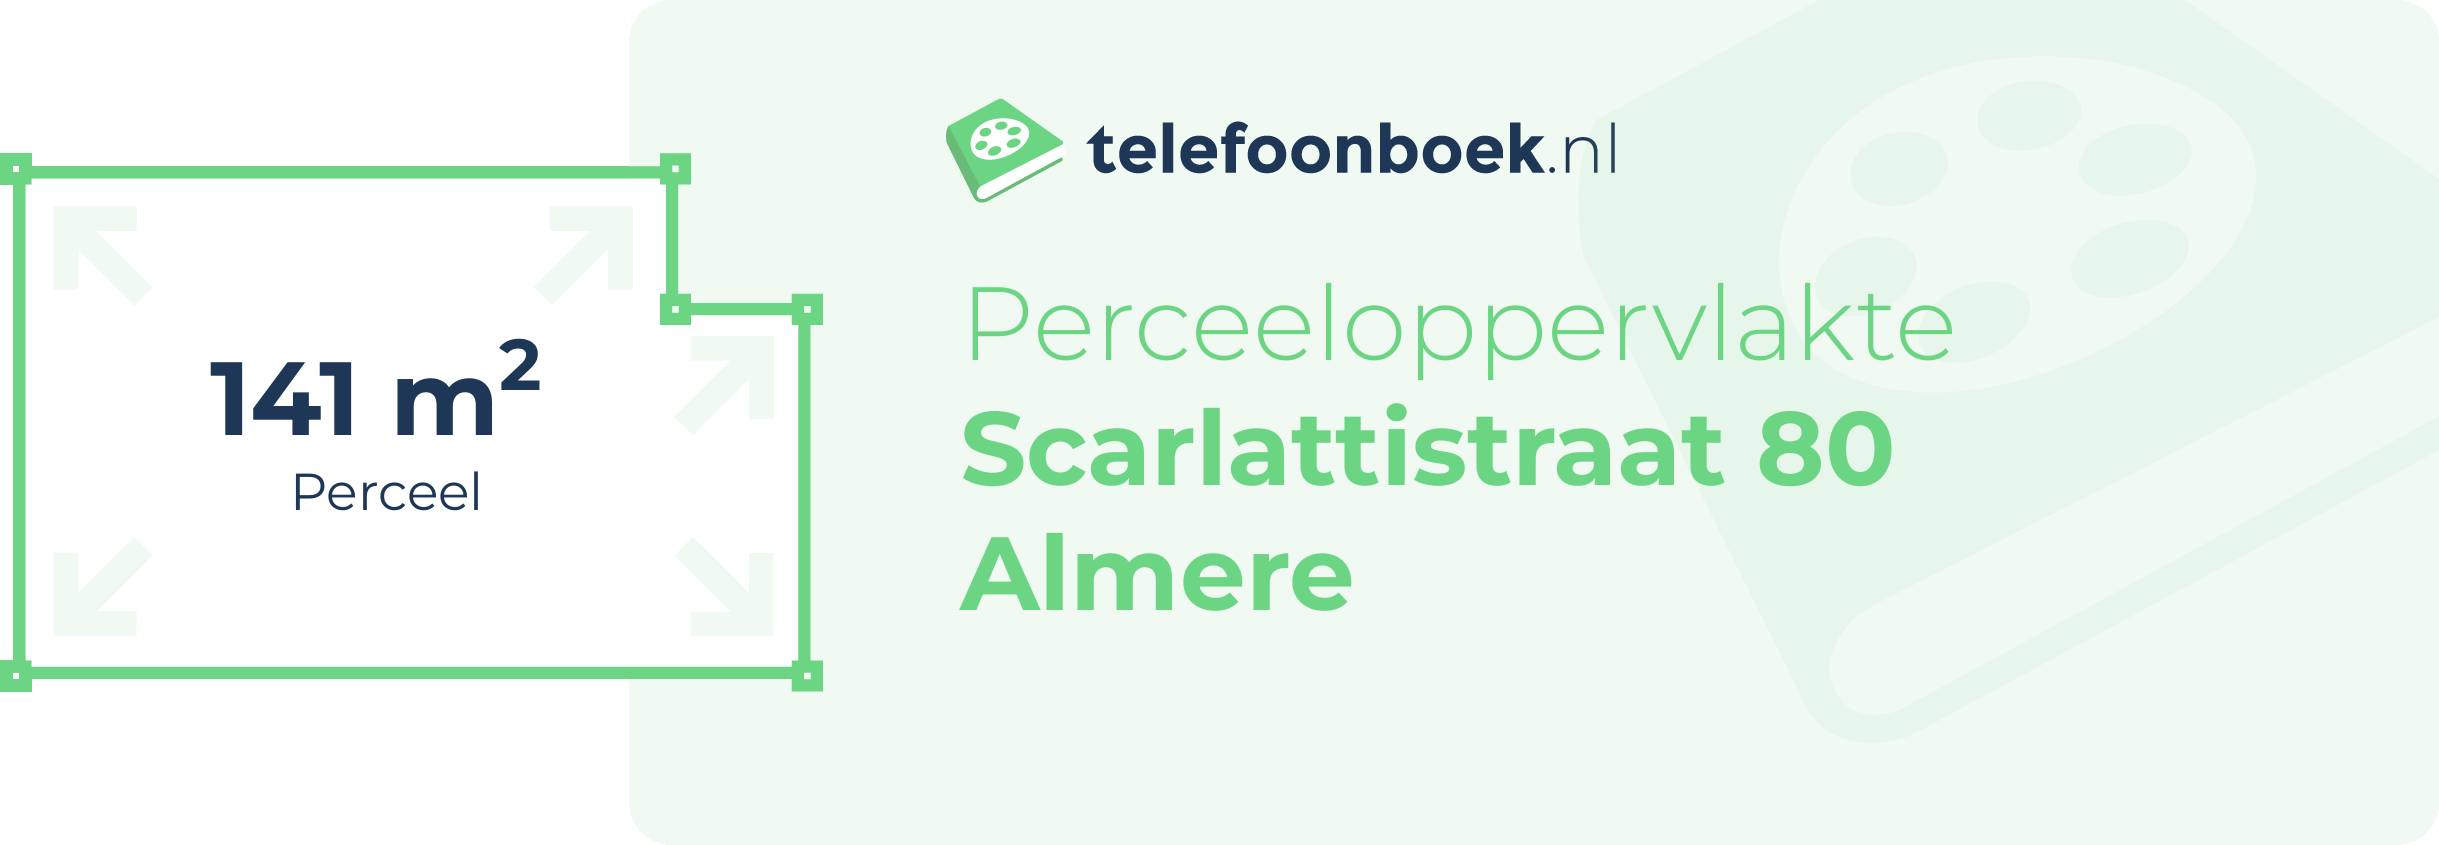 Perceeloppervlakte Scarlattistraat 80 Almere